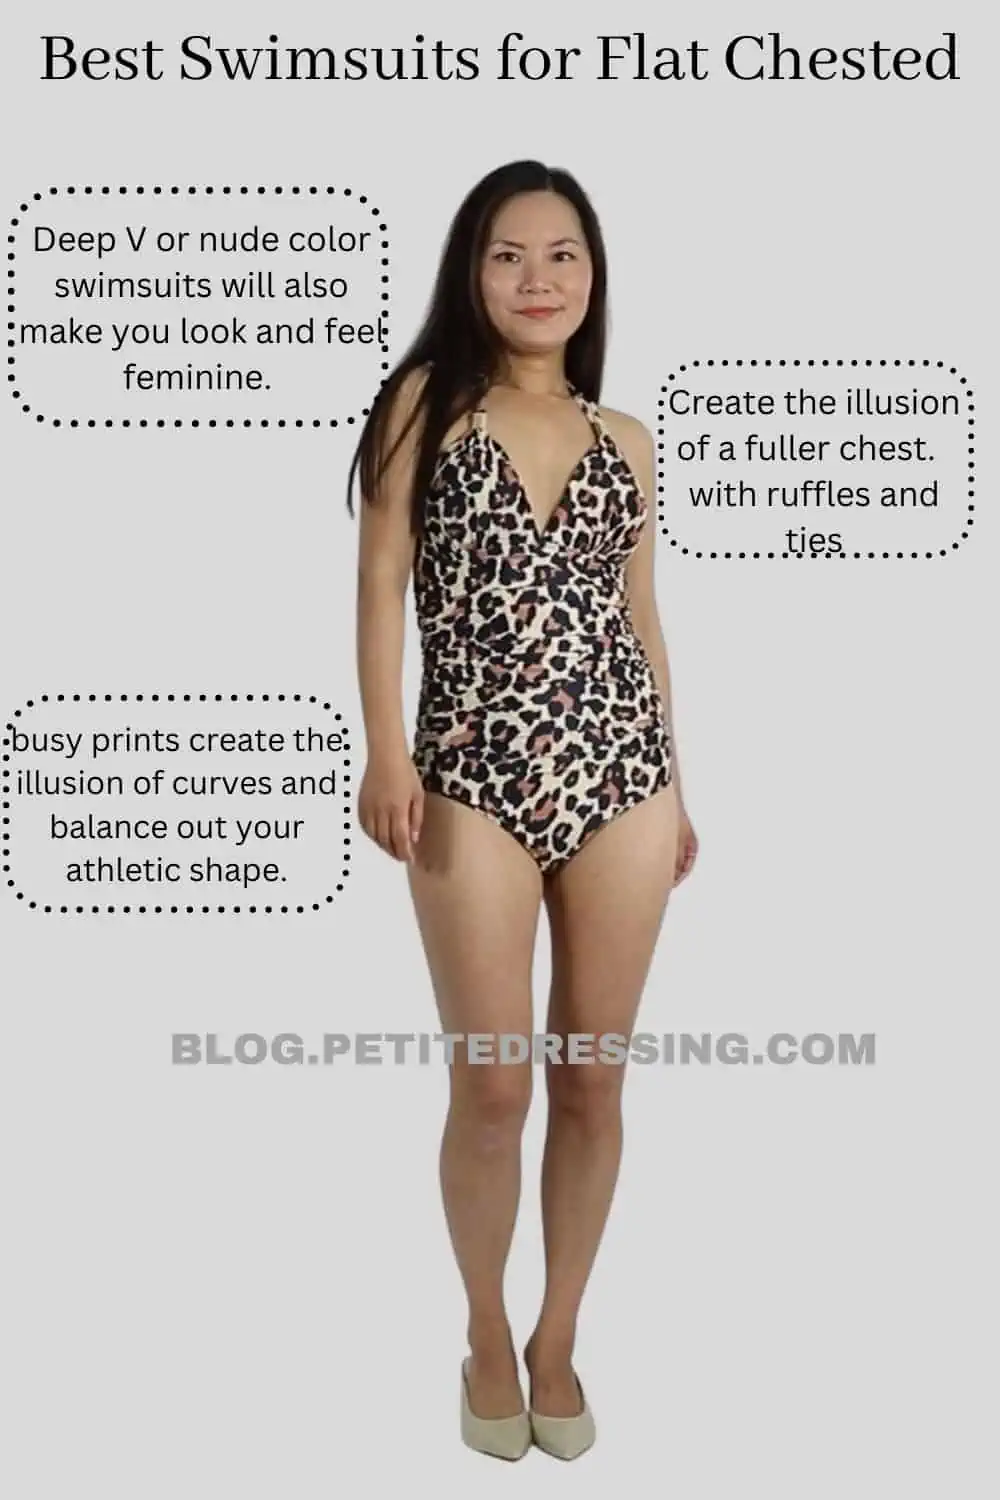 Stock Drop Bandage Push Up Bra Women's Bikini Swim Dresses for